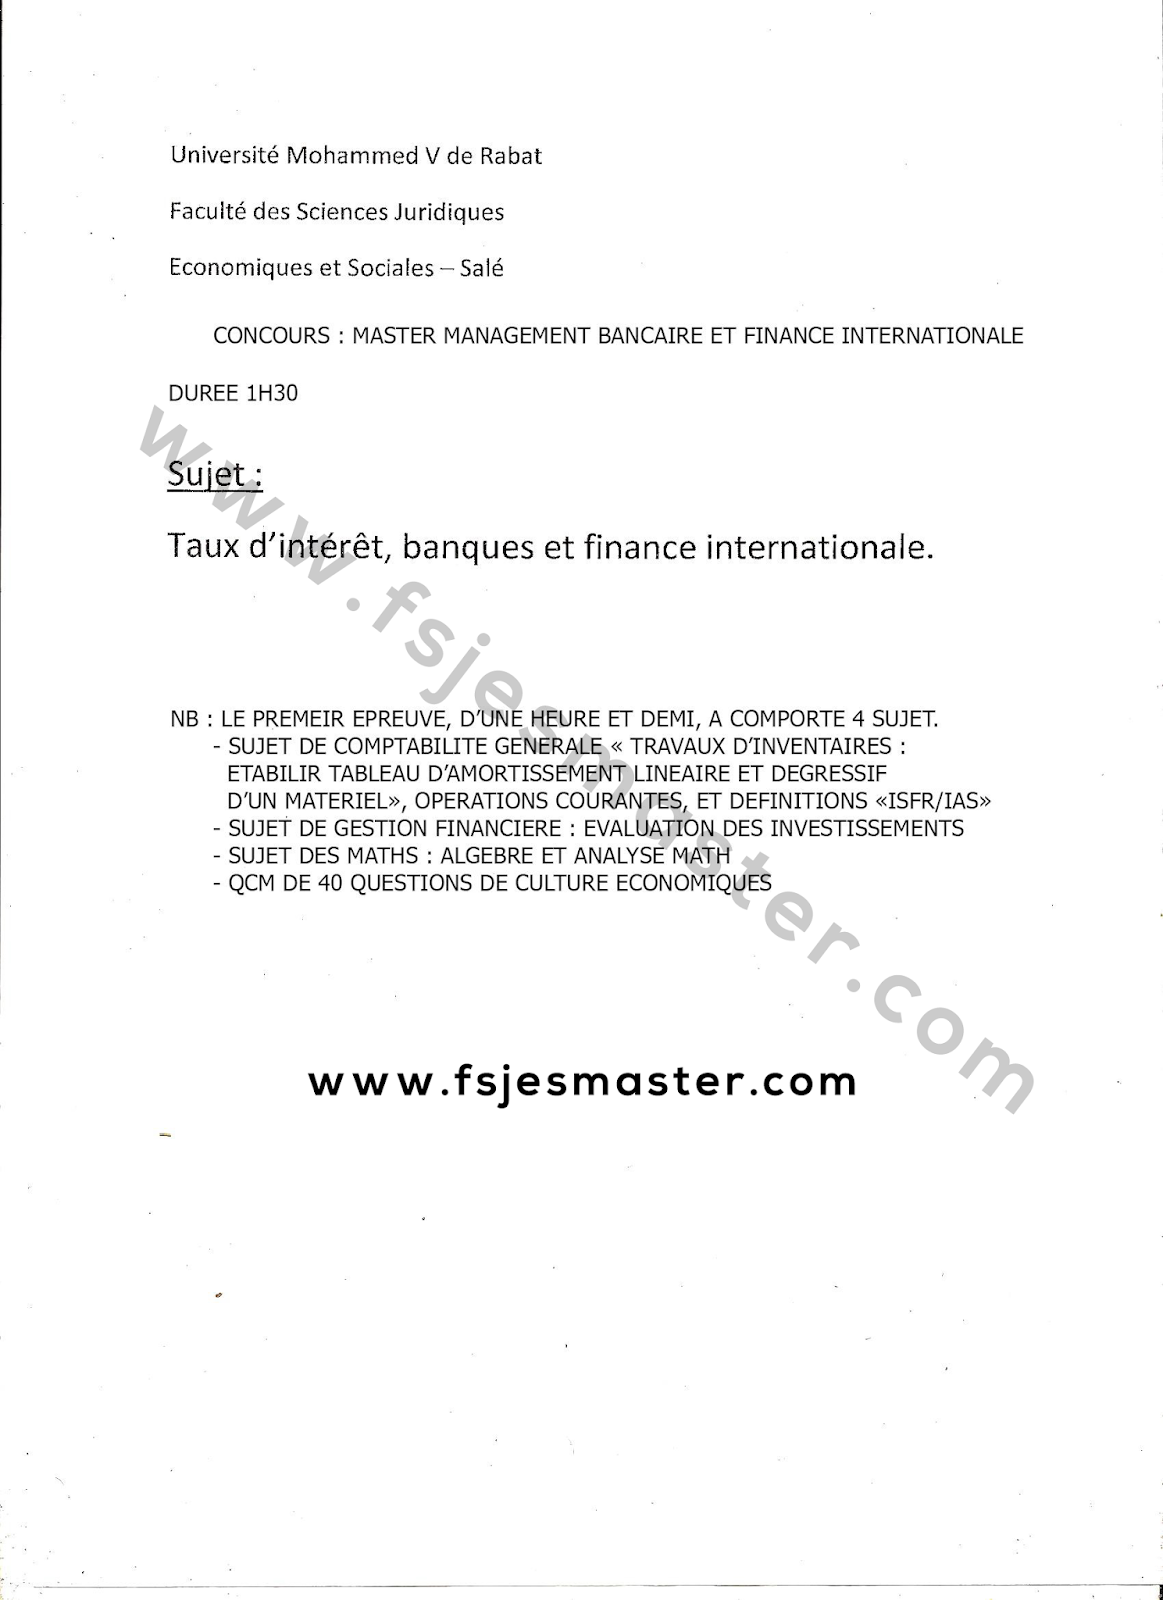 Exemple Concours Master Management Bancaire et Finance Internationale - Fsjes Salé